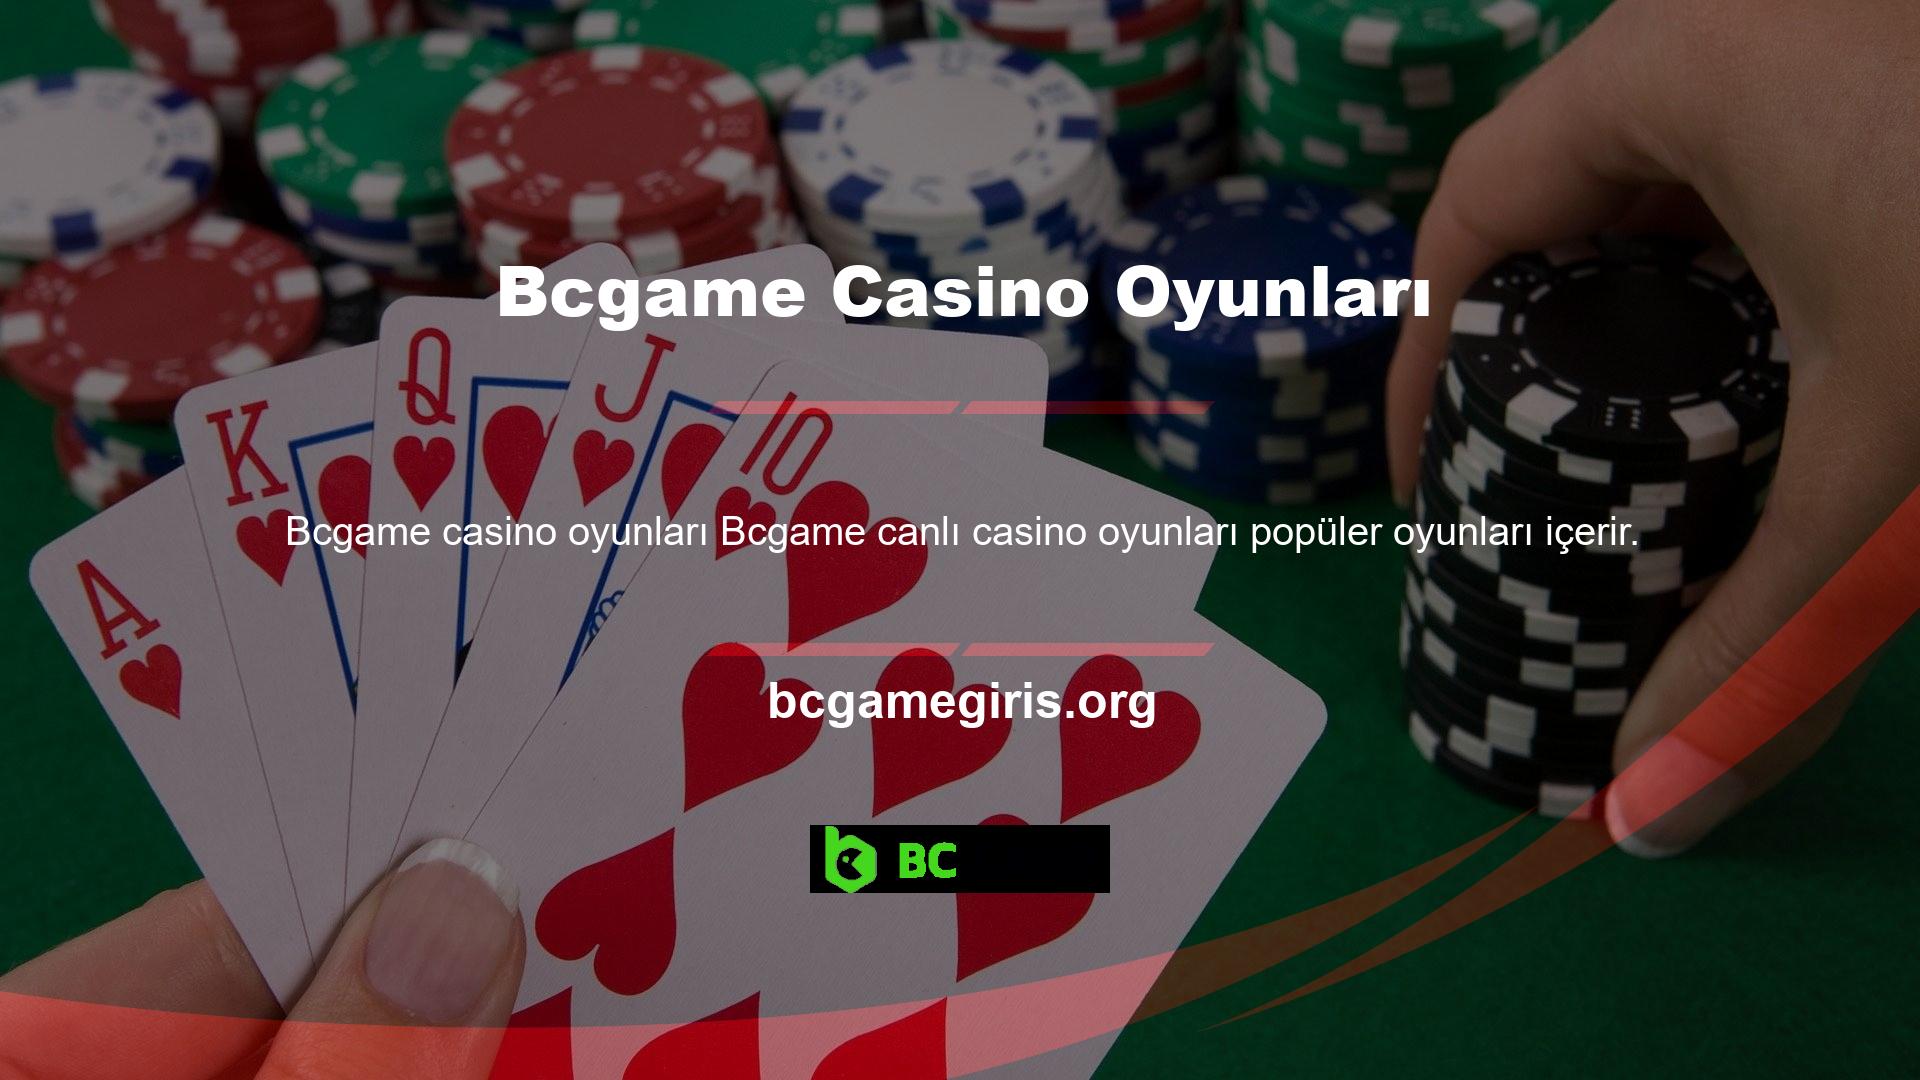 Bcgame şu anda sektördeki en çok kayıtlı "casino" sitelerinden biridir